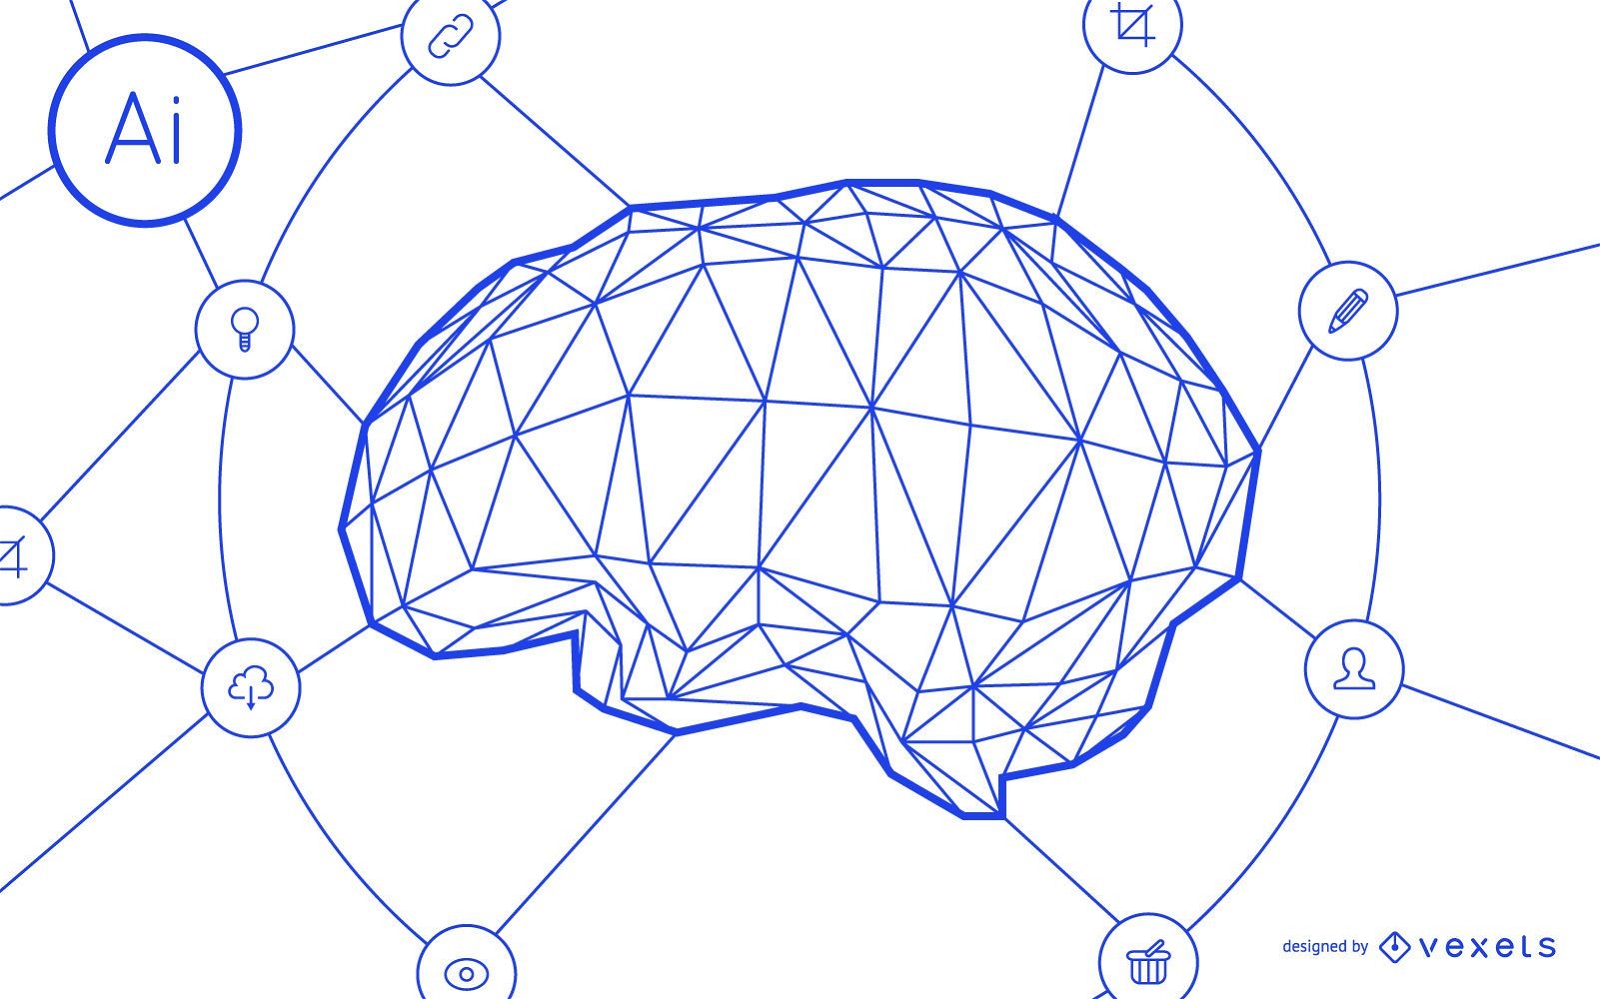 Gehirnnetzwerkdesign f?r k?nstliche Intelligenz